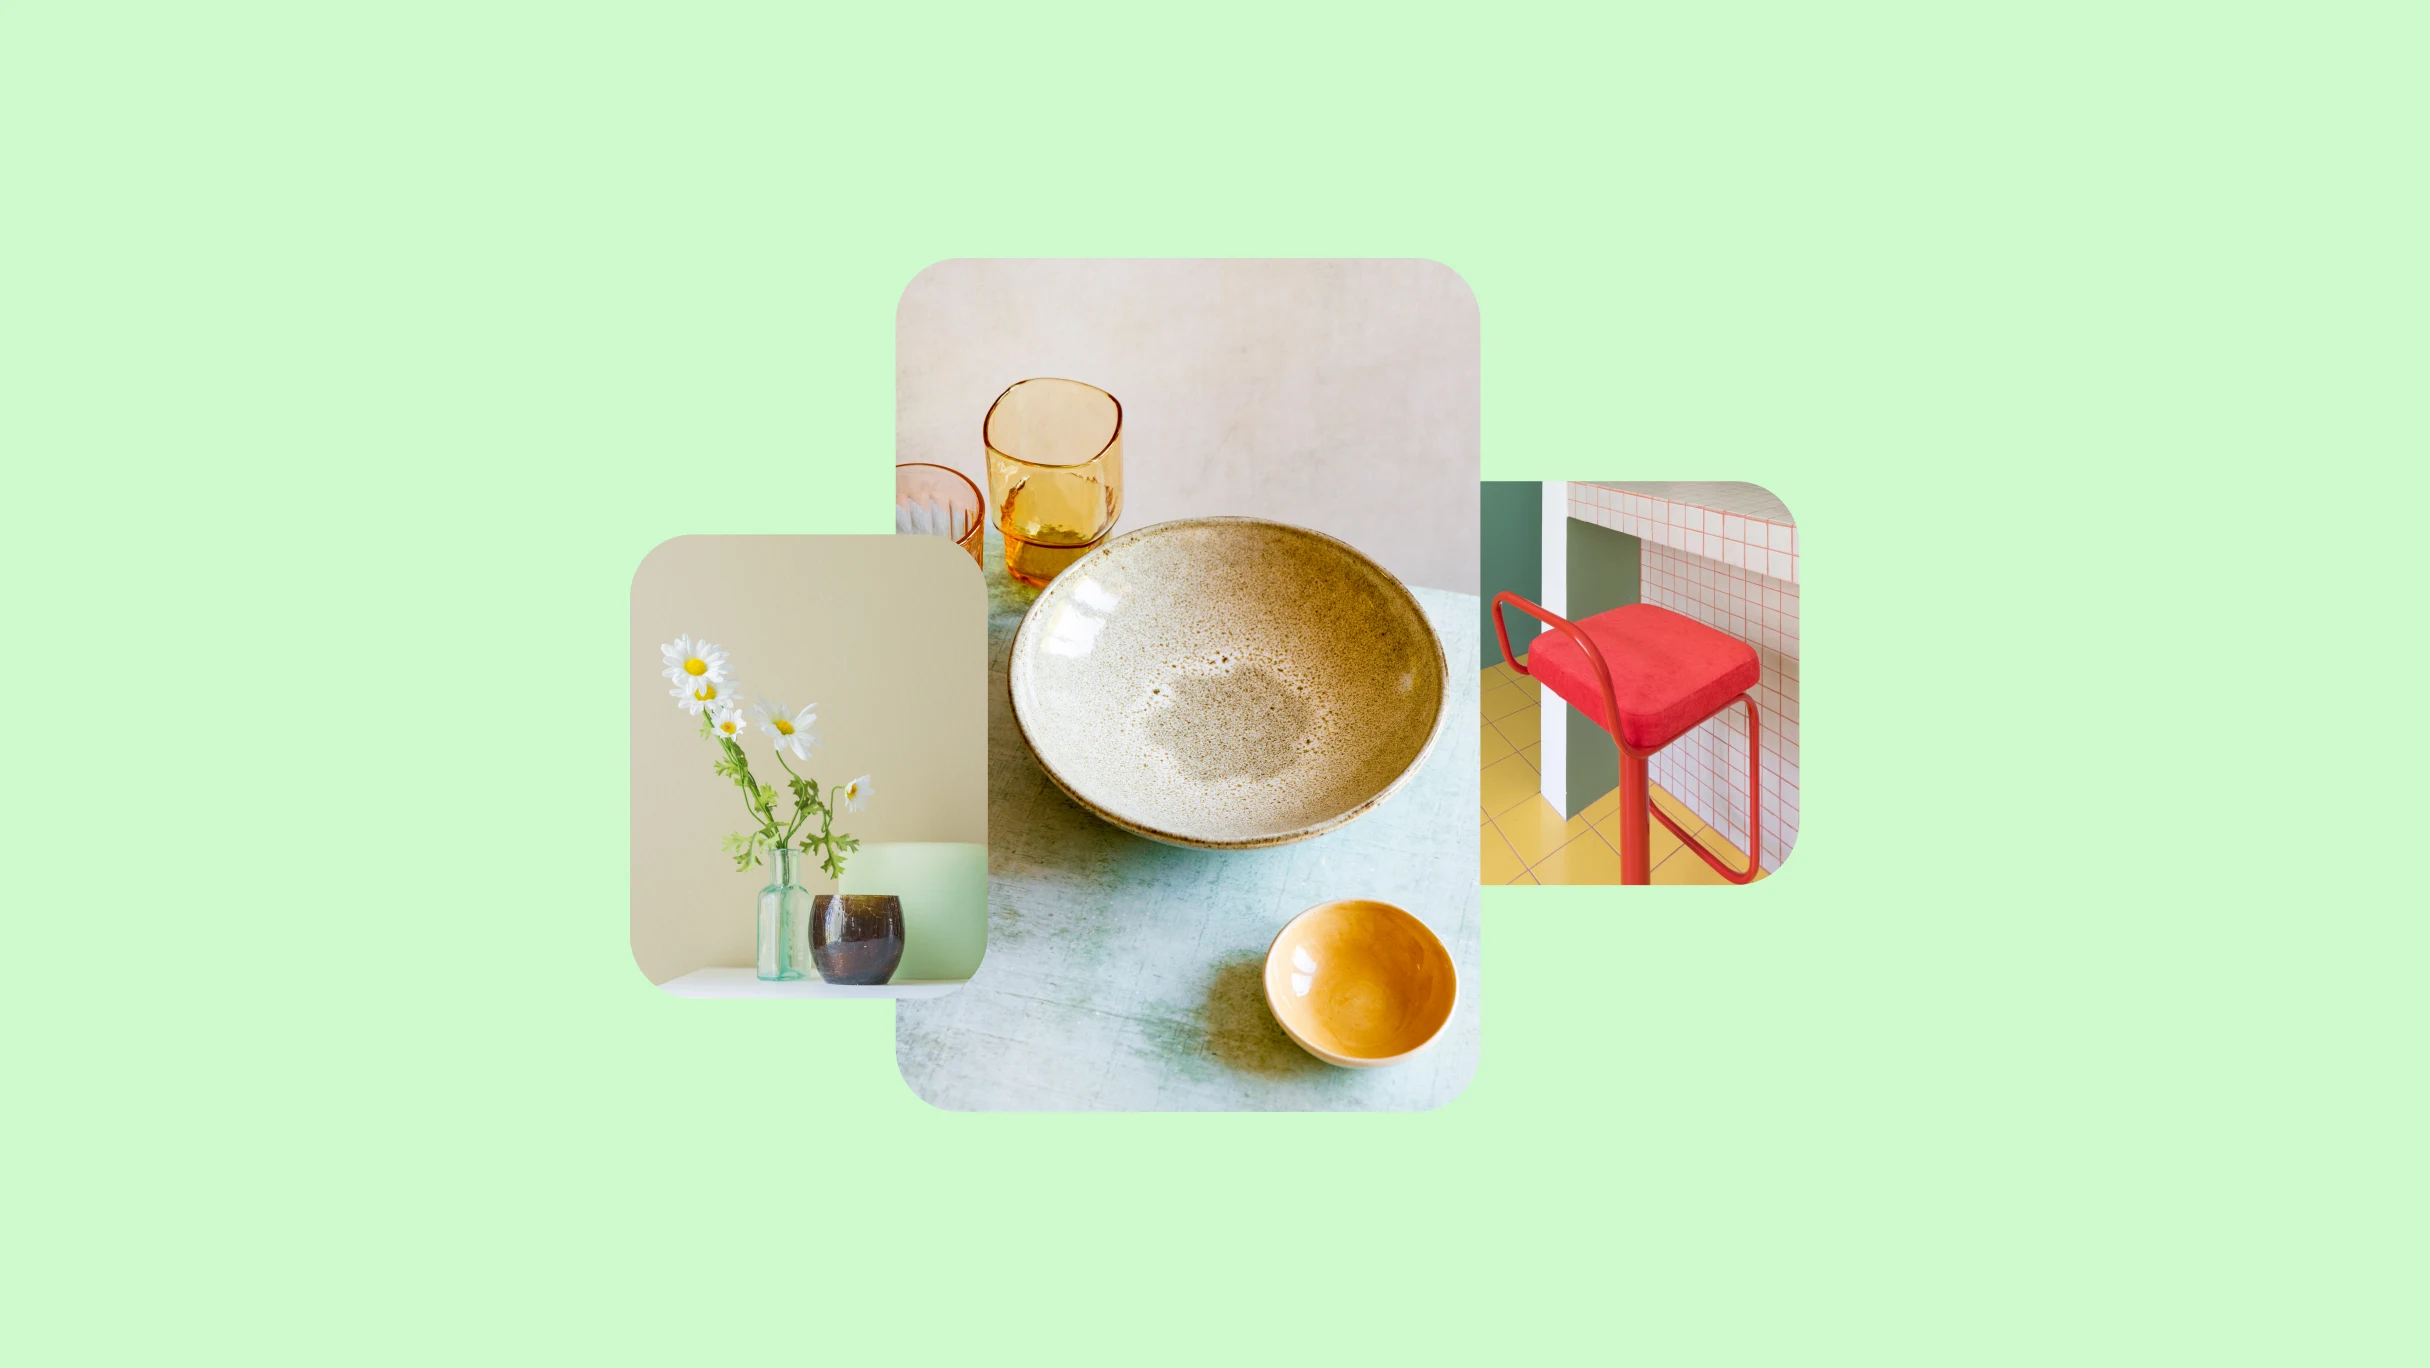 Três imagens sobre um fundo verde-limão. À esquerda, uma foto de margaridas em um vaso transparente. No meio, uma vasilha de cerâmica e copos e, na extrema direita, a imagem de uma cadeira vermelha em uma bancada.